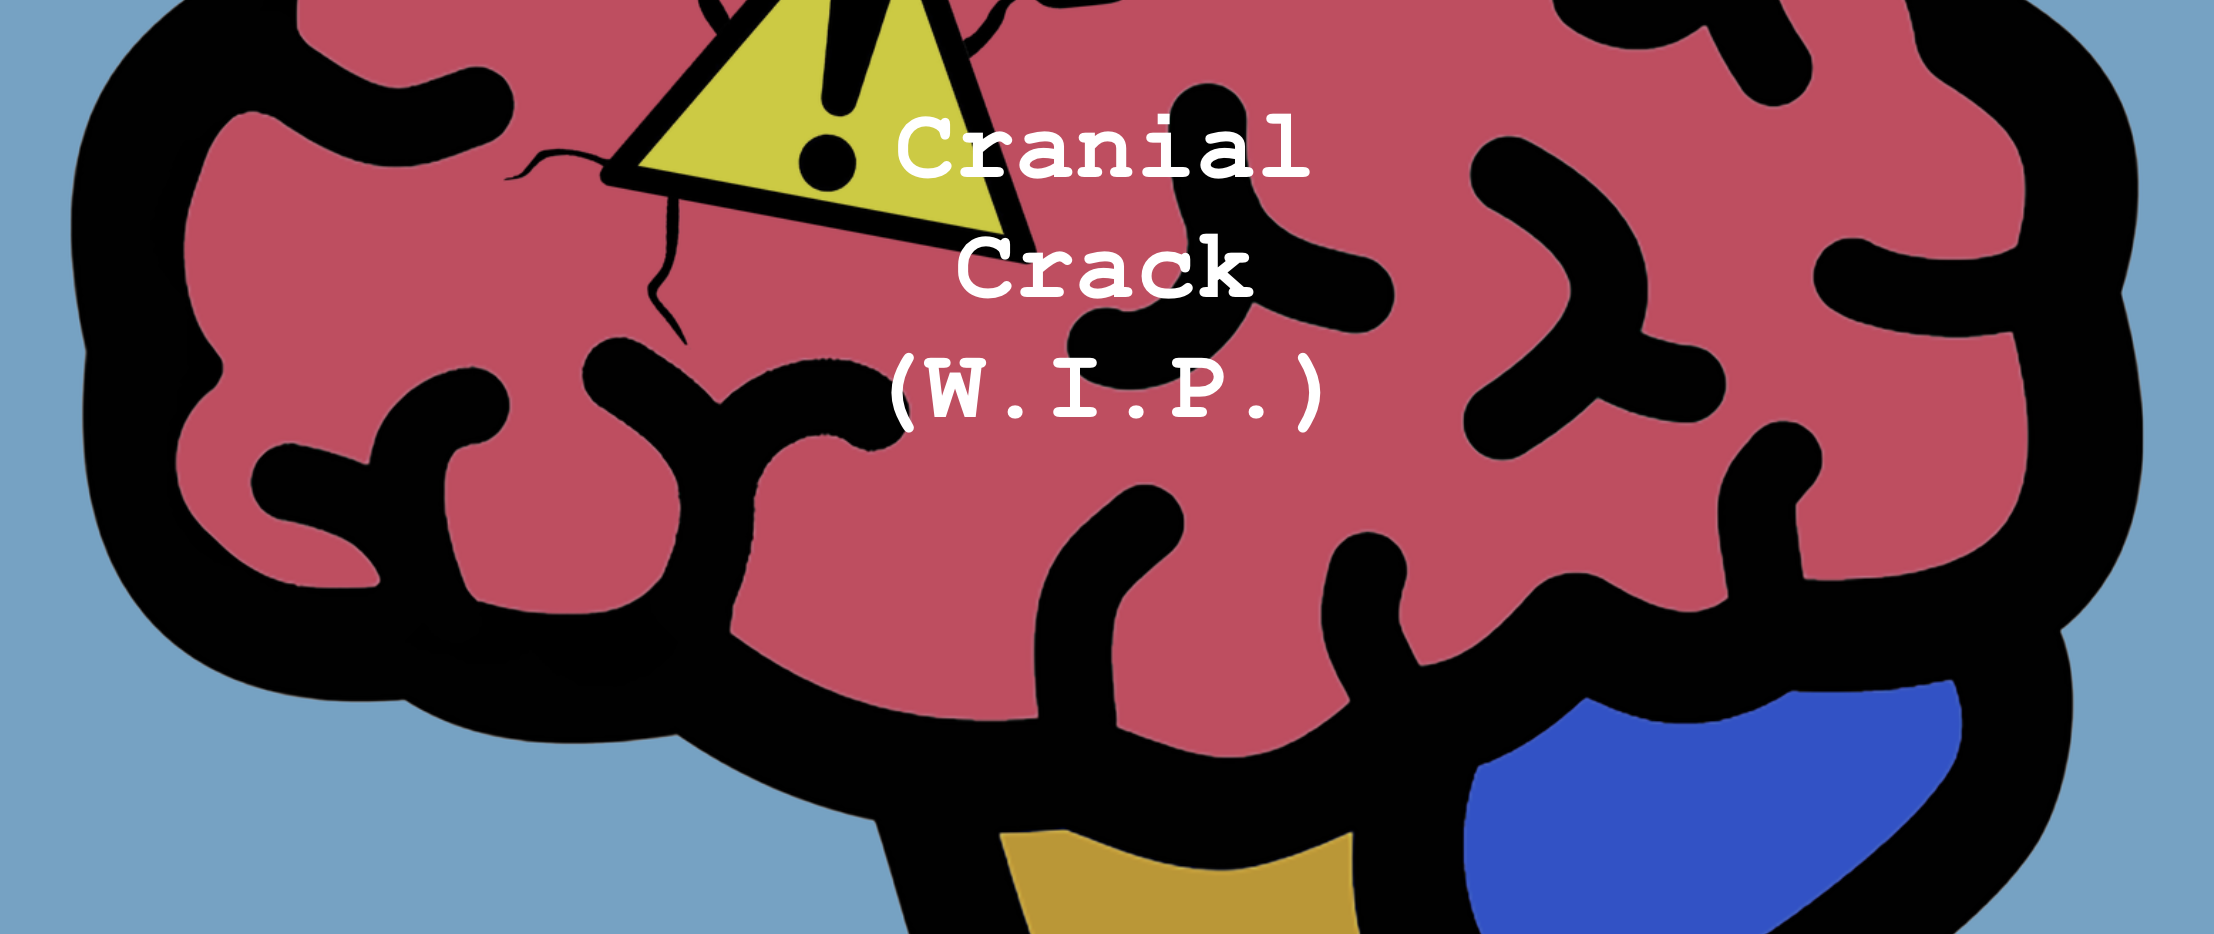 Cranial Crack